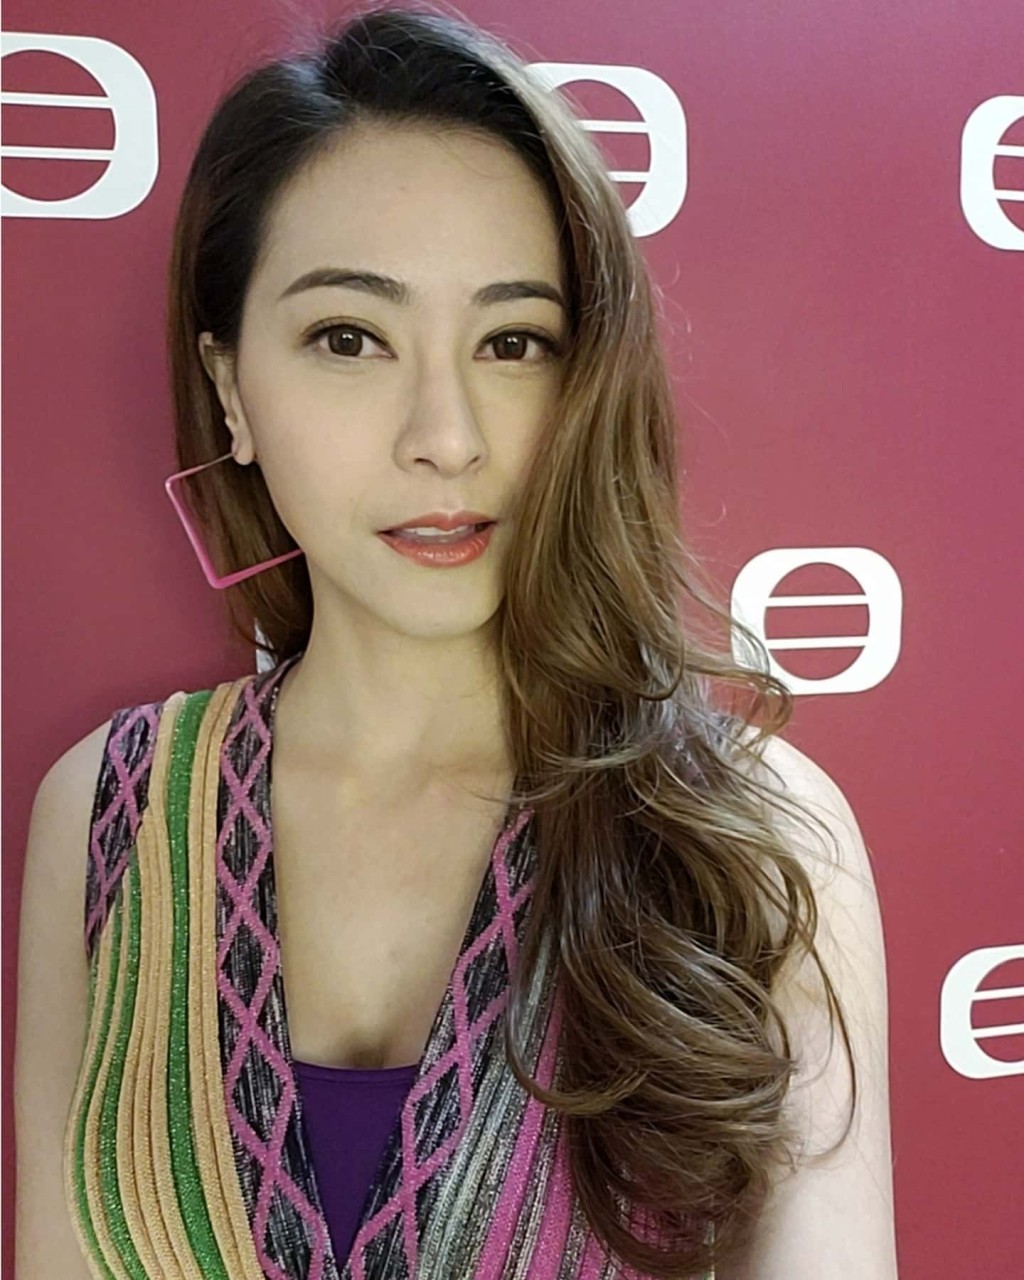 劉芷希2019年與邵氏簽約成於旗下演員。